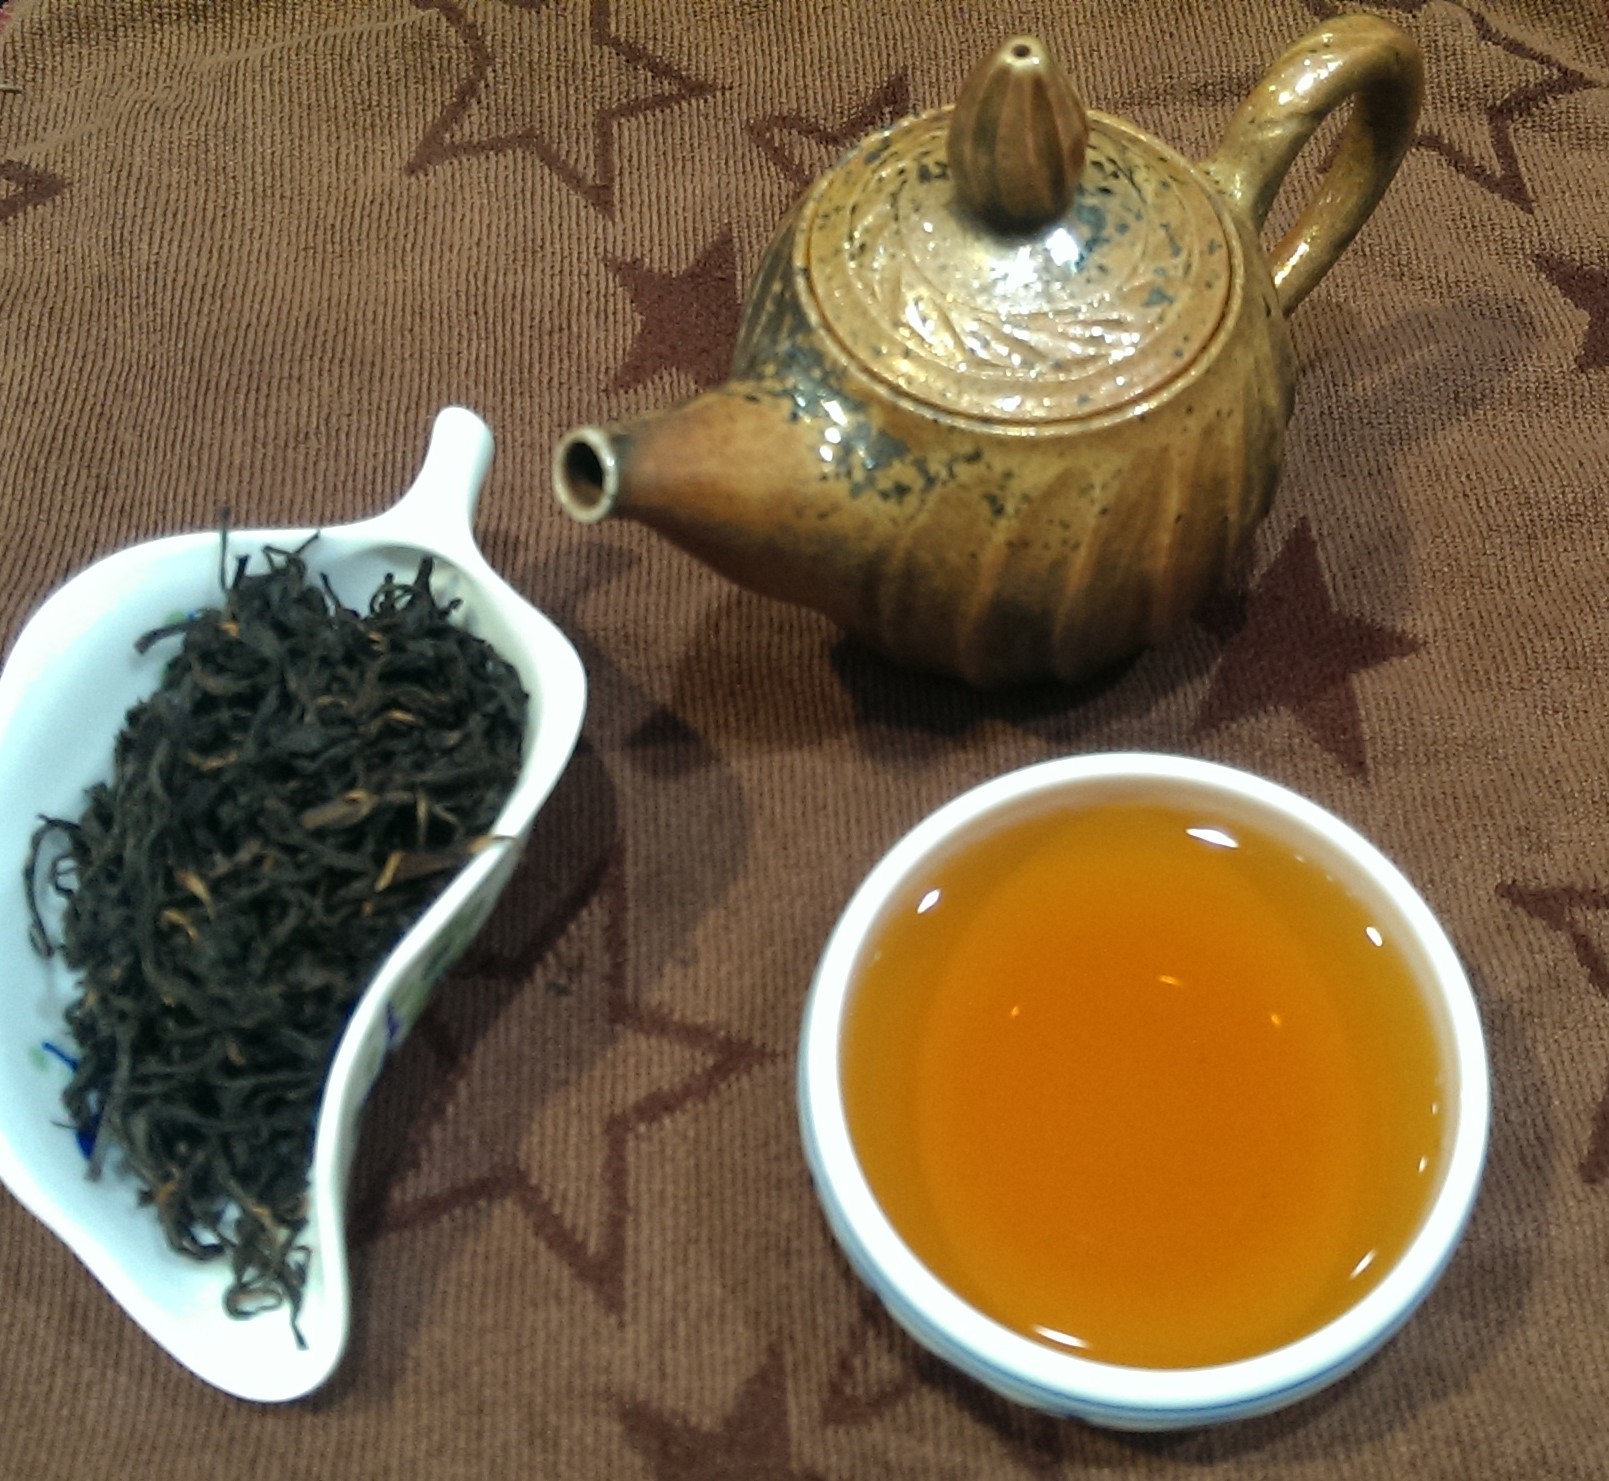 2梨山頂級紅茶